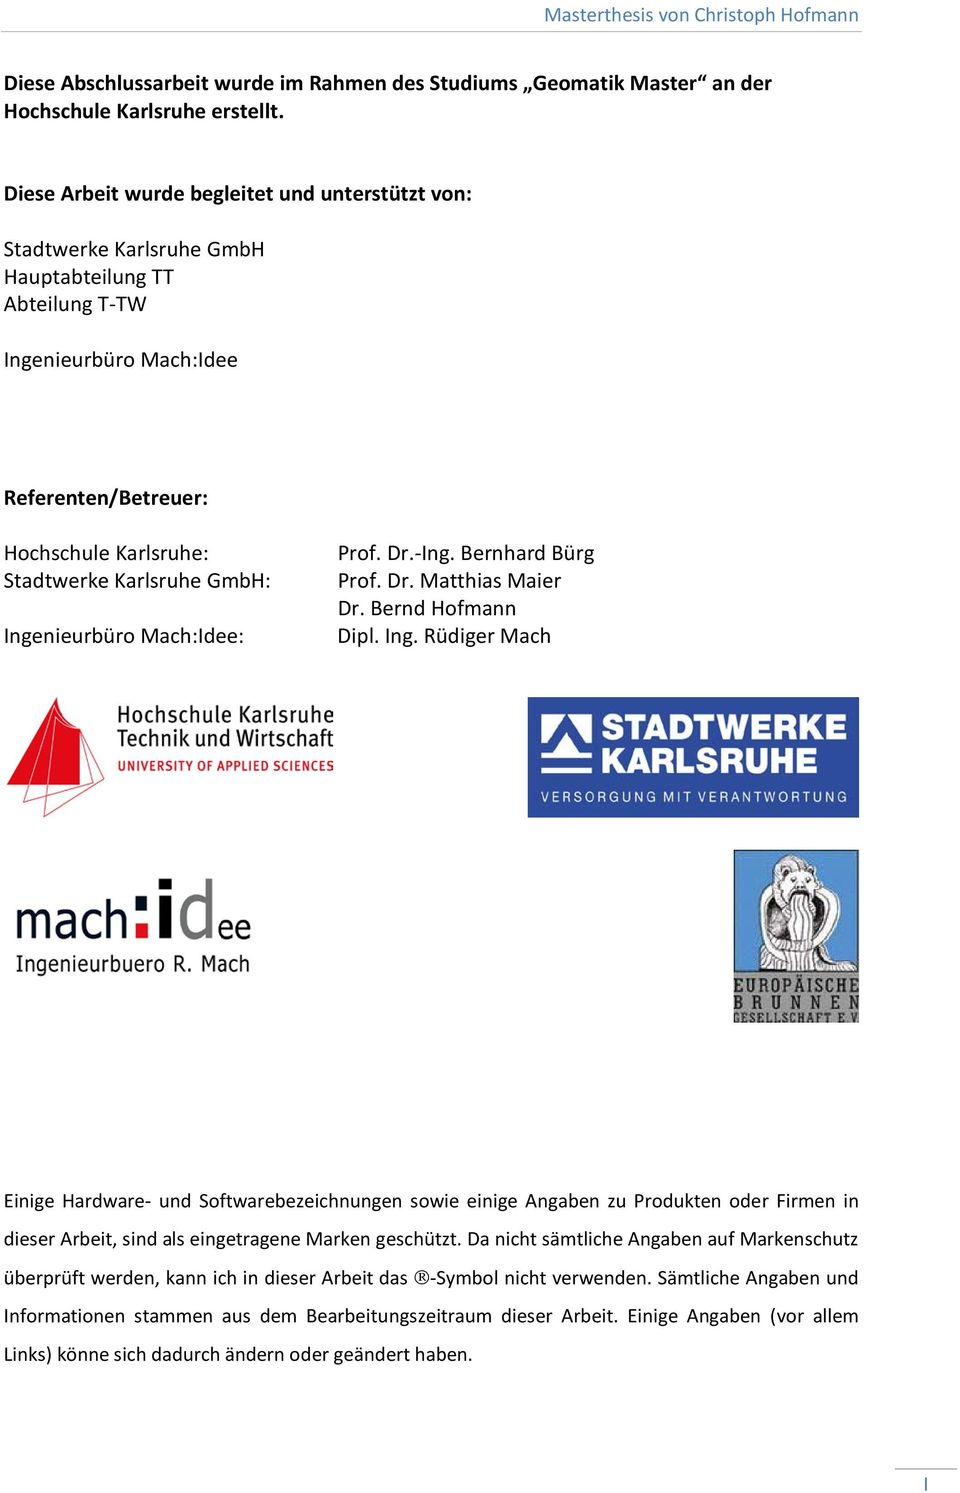 GmbH: Ingenieurbüro Mach:Idee: Prof. Dr.-Ing. Bernhard Bürg Prof. Dr. Matthias Maier Dr. Bernd Hofmann Dipl. Ing. Rüdiger Mach Einige Hardware- und Softwarebezeichnungen sowie einige Angaben zu Produkten oder Firmen in dieser Arbeit, sind als eingetragene Marken geschützt.